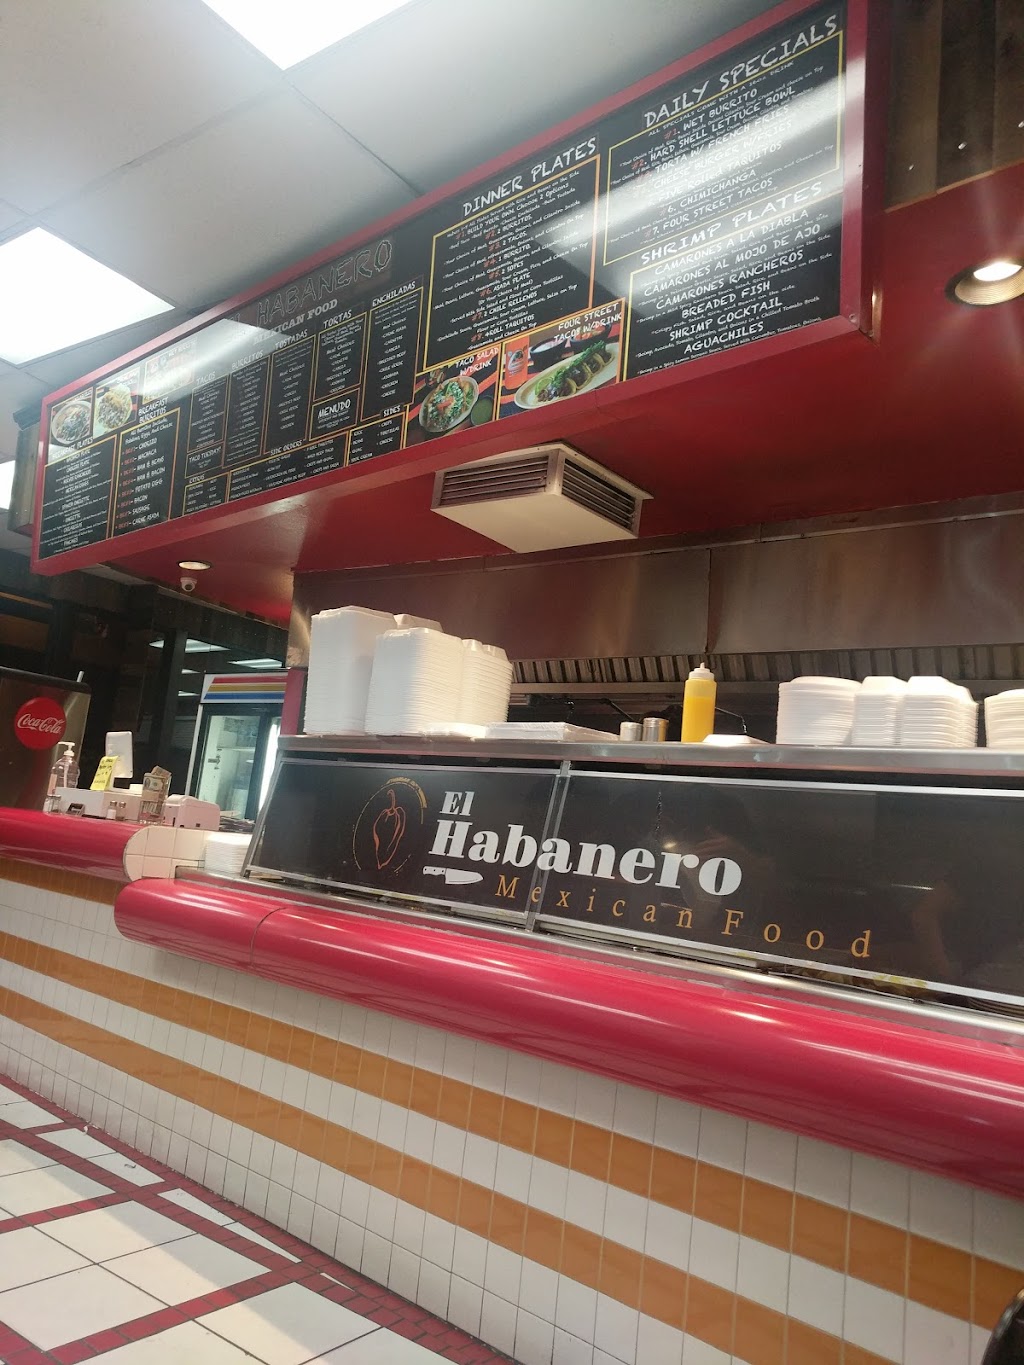 El Habanero Mexican Food | 6160 Arlington Ave, Riverside, CA 92504, USA | Phone: (951) 343-5868